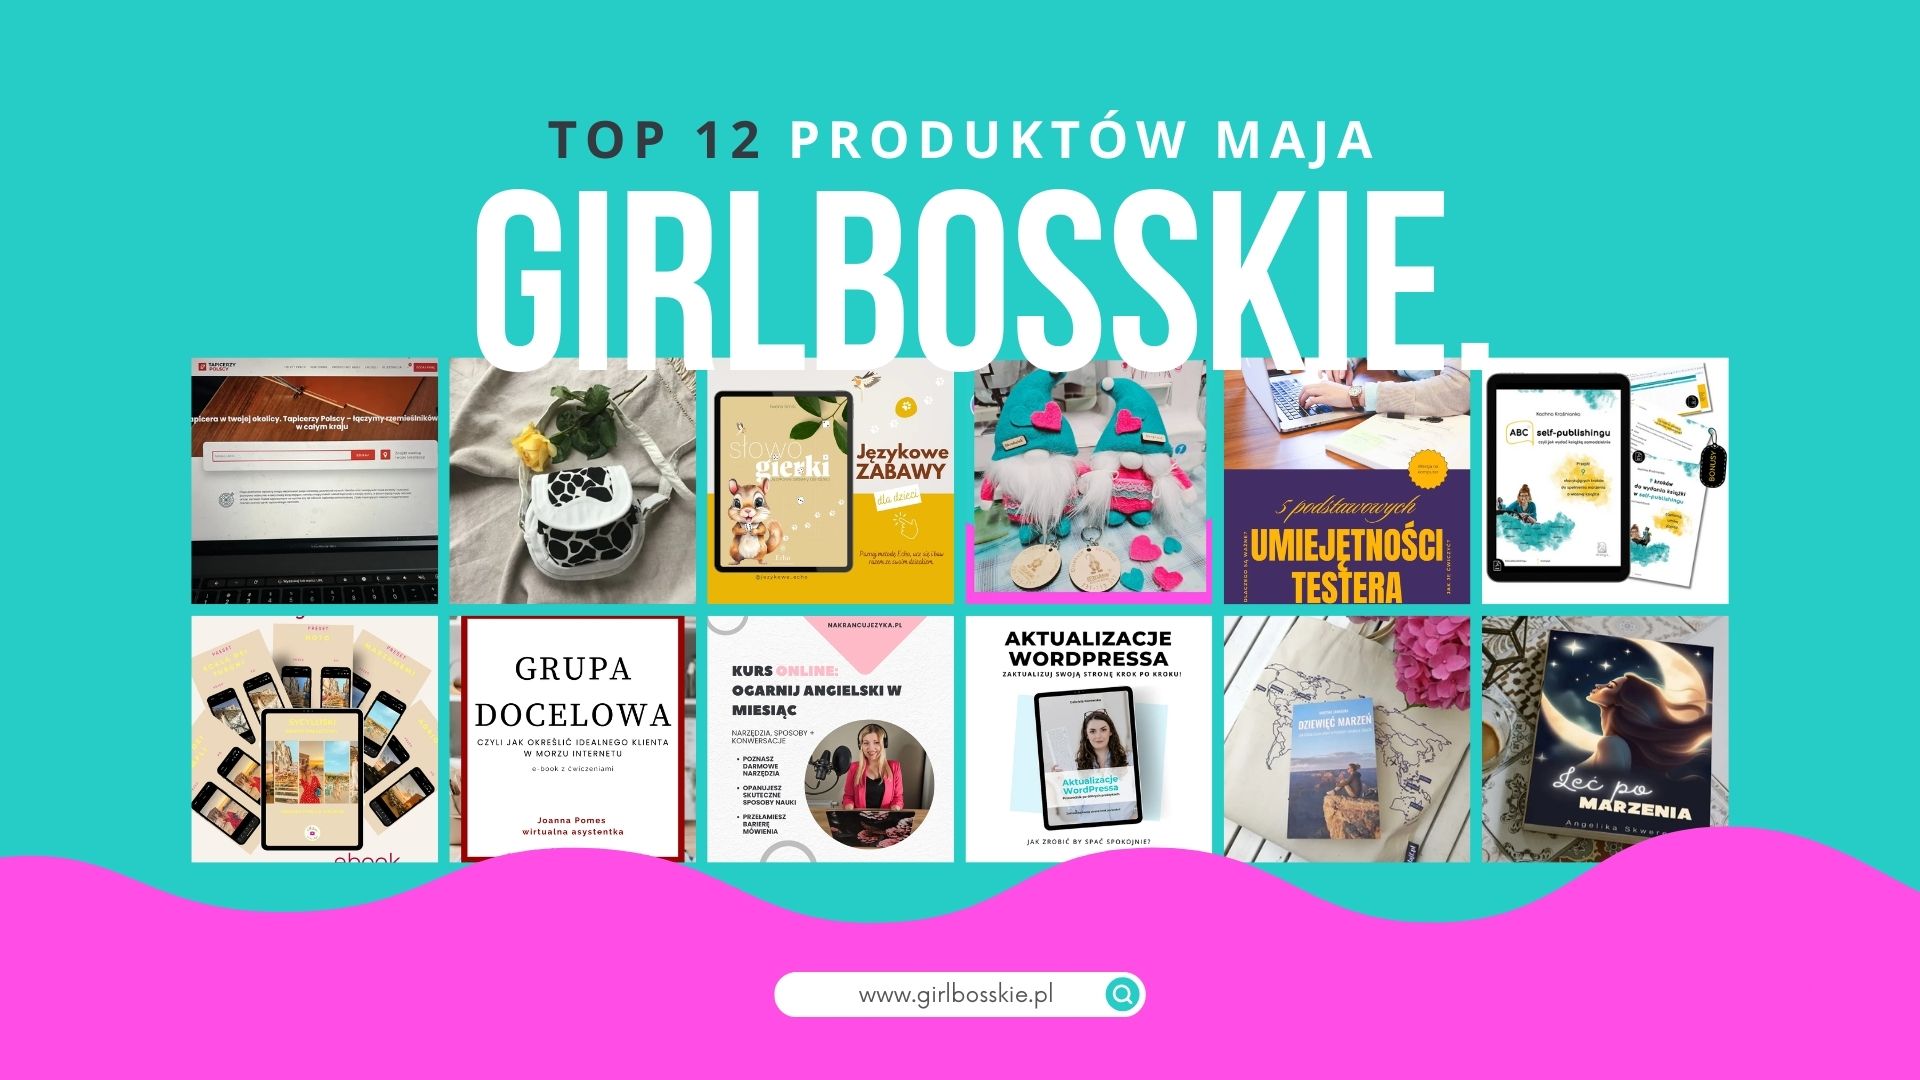 TOP12 Produktów Maja Portalu GIRLBOSSKIE